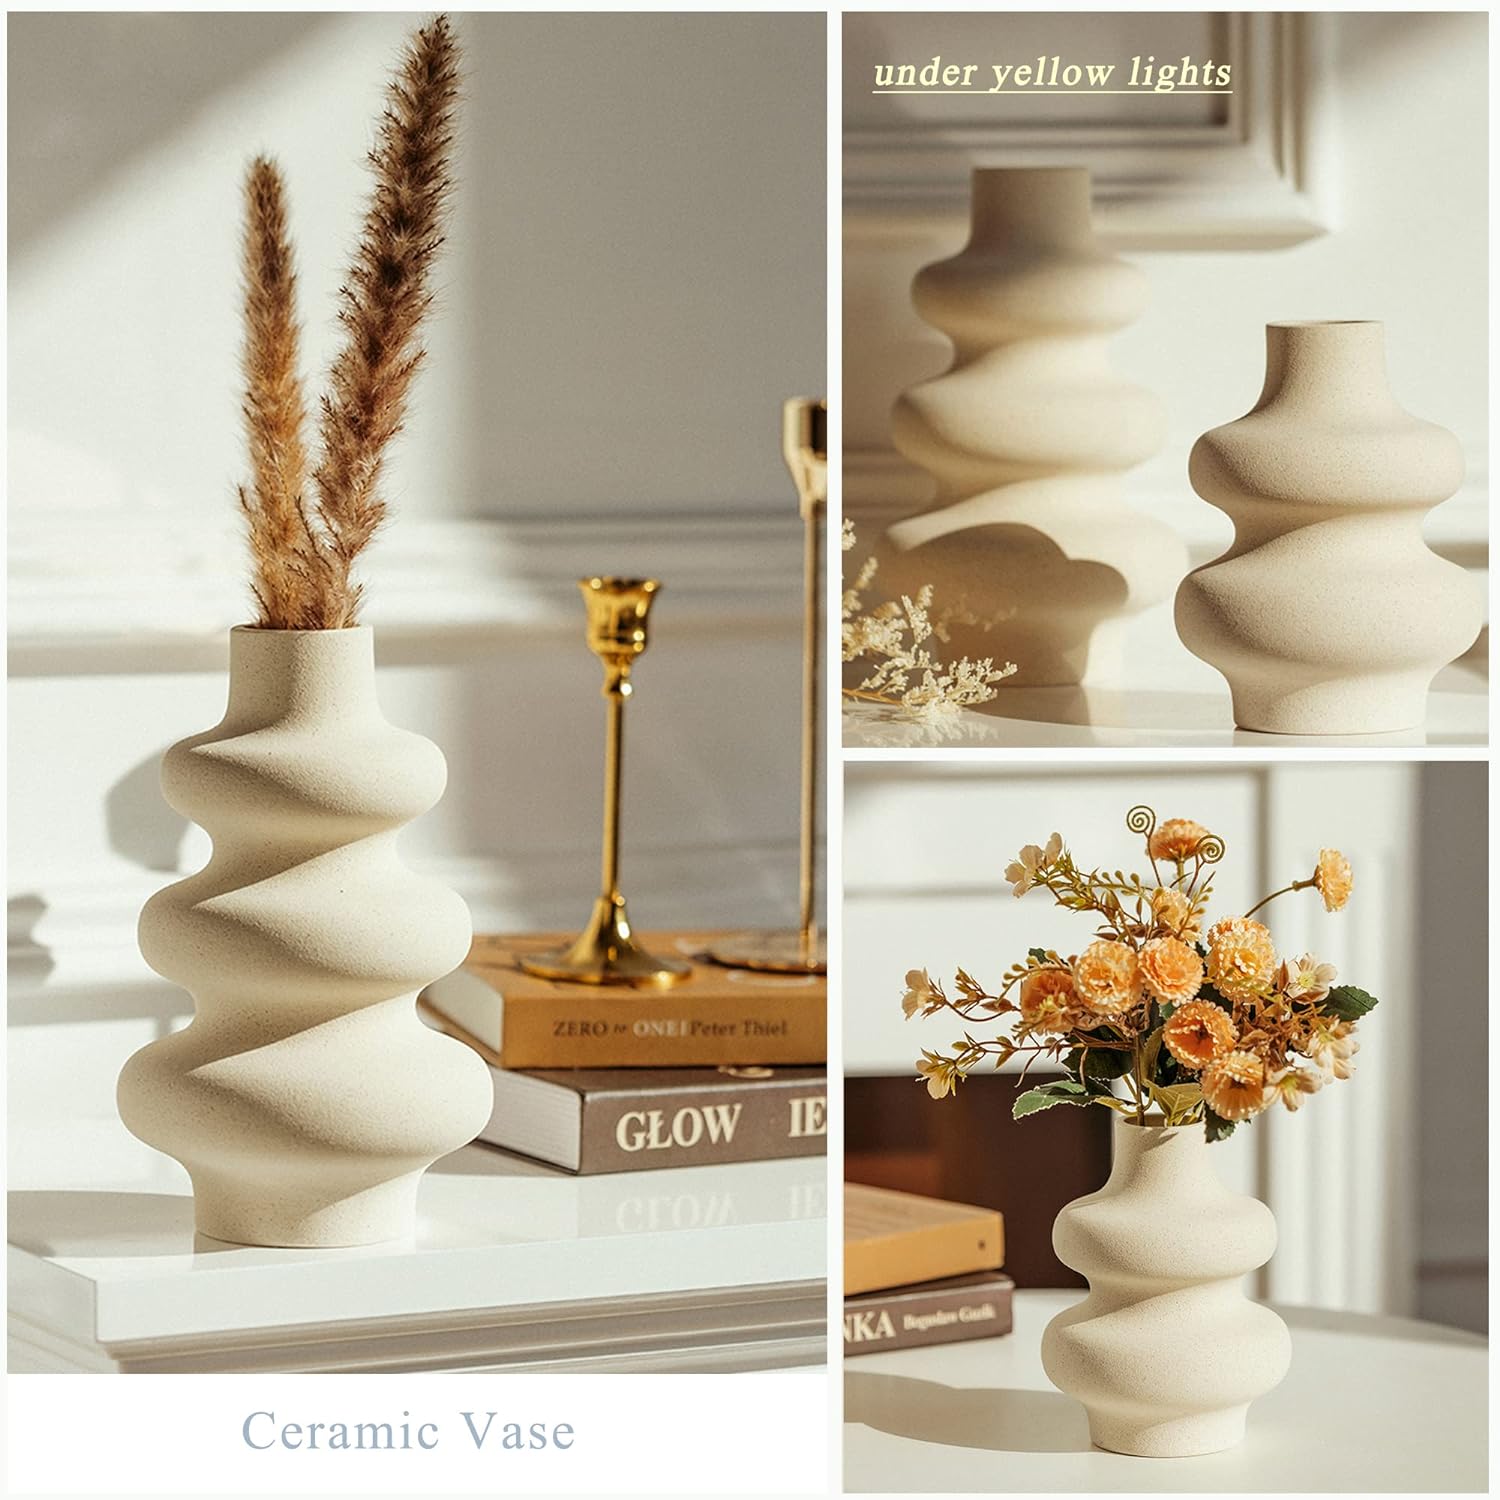 Round ceramic vases